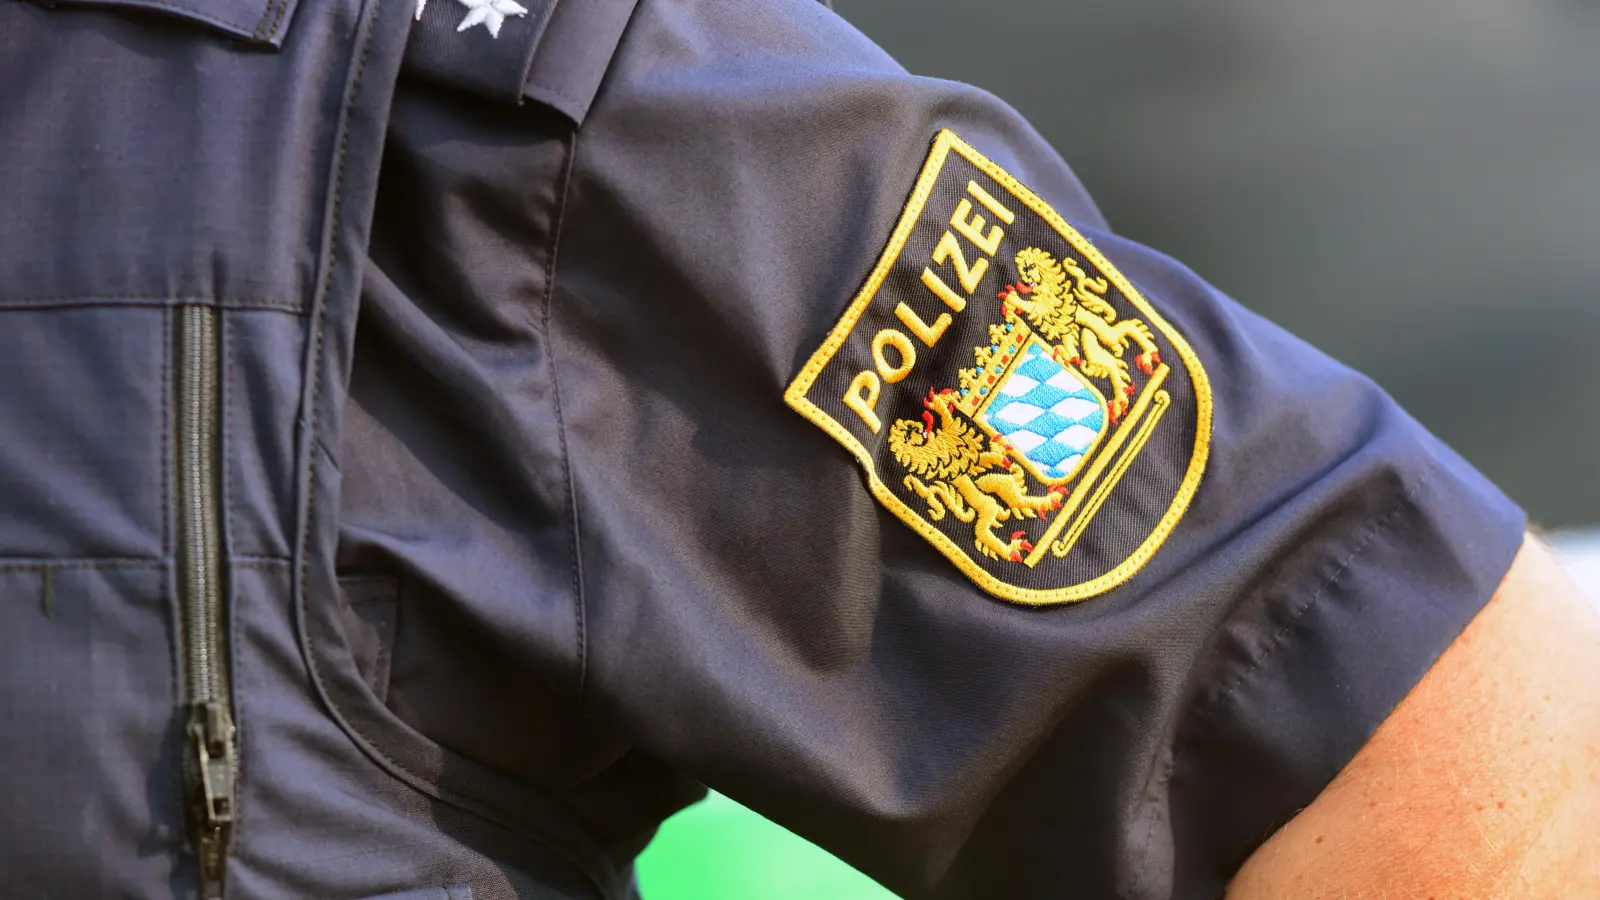 Ein volltrunkener Autofahrer hat die Polizei auf der A7 bei Rothenburg am Mittwoch beschäftigt. (Symbolbild: James Albright)